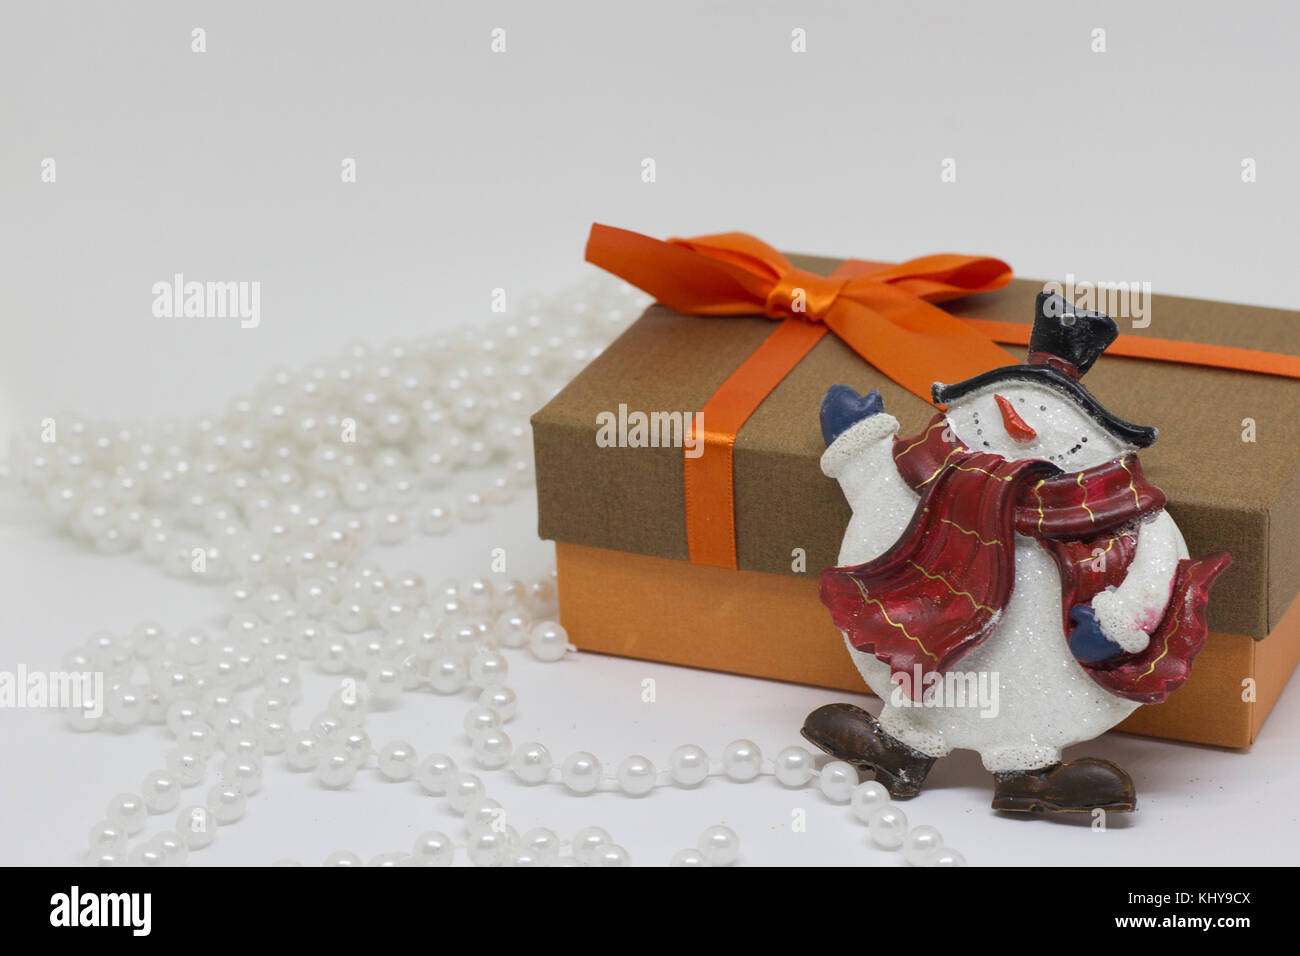 Boîte-cadeau avec un arc d'orange, perles blanches, toy snowman Photo Stock  - Alamy